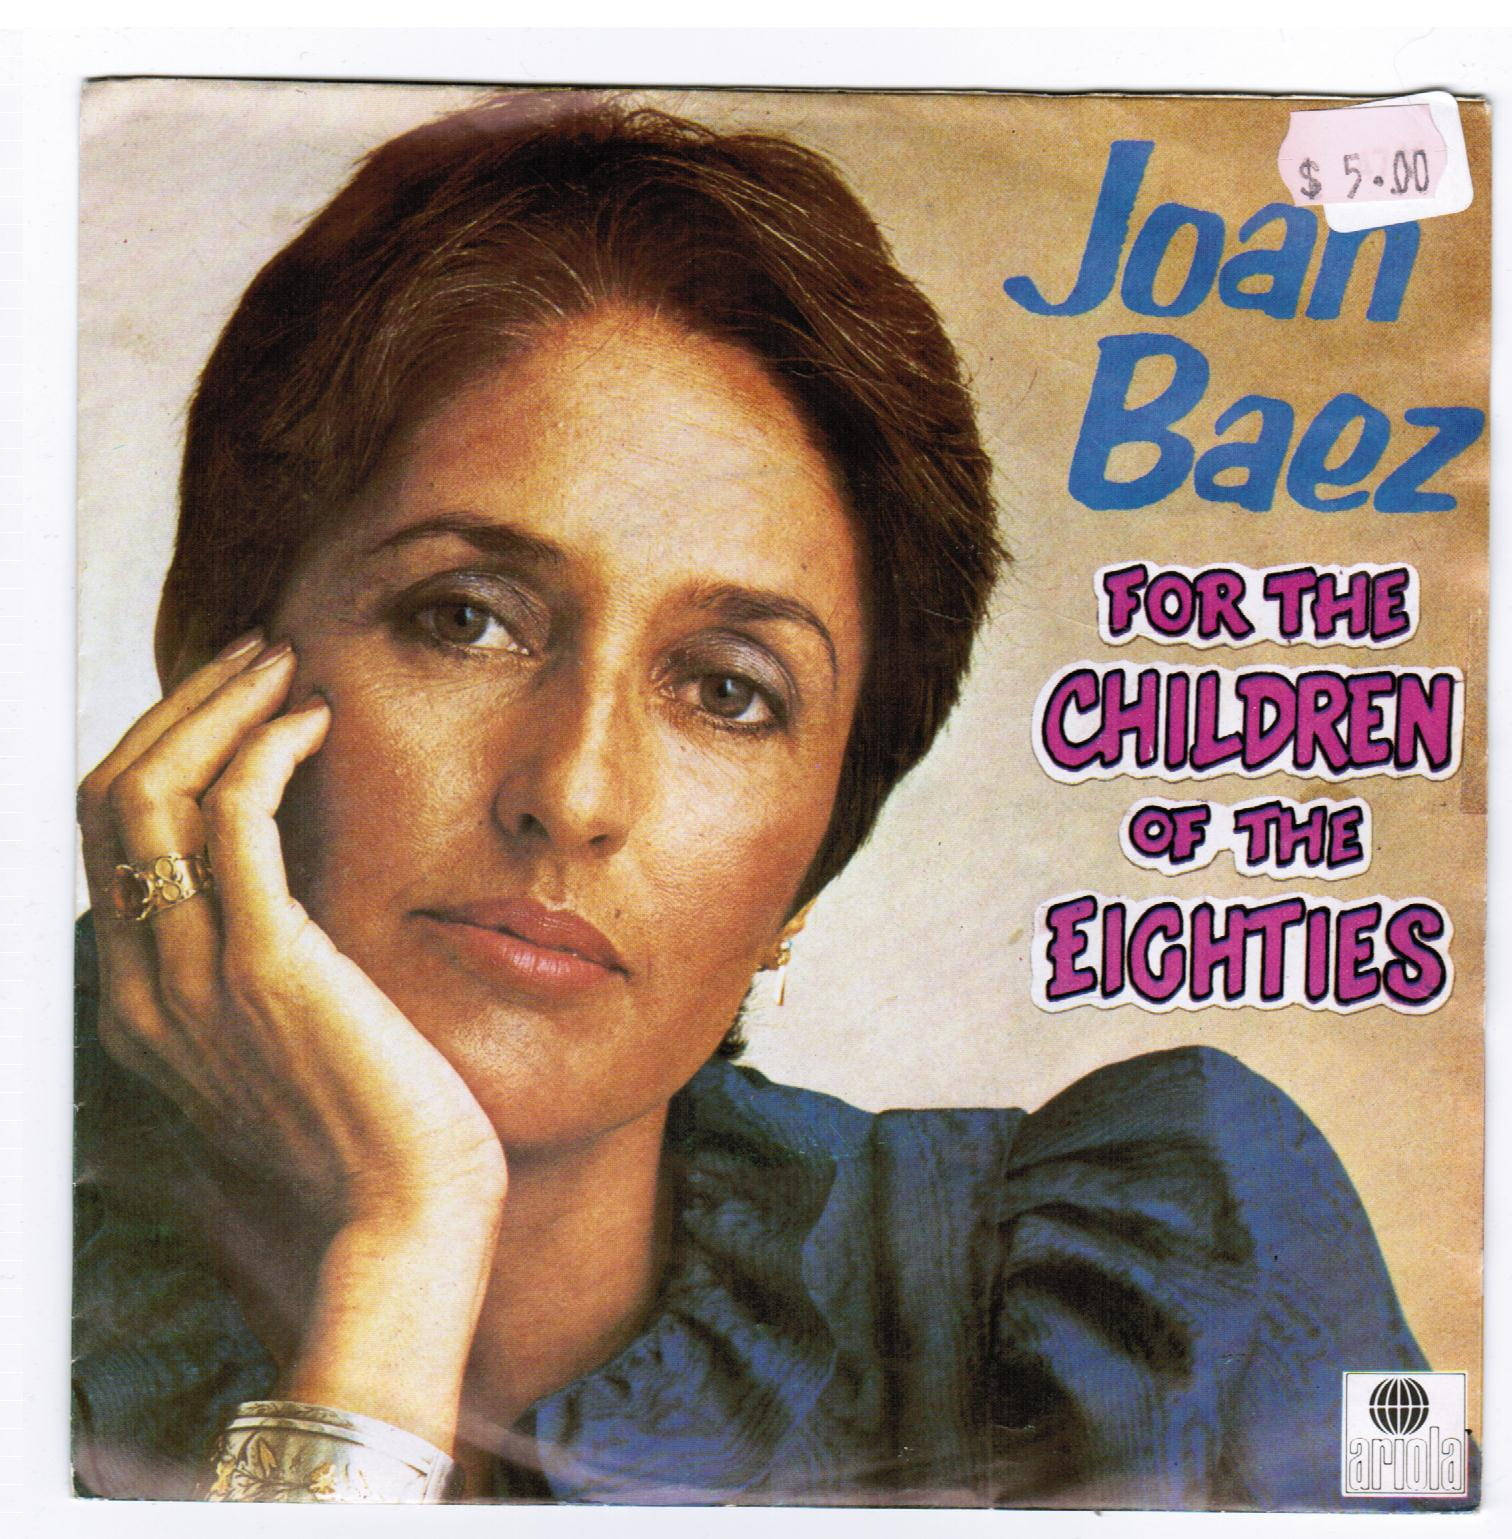 Joan Baez - For the Children of the Eighties Album Cover Wallpaper